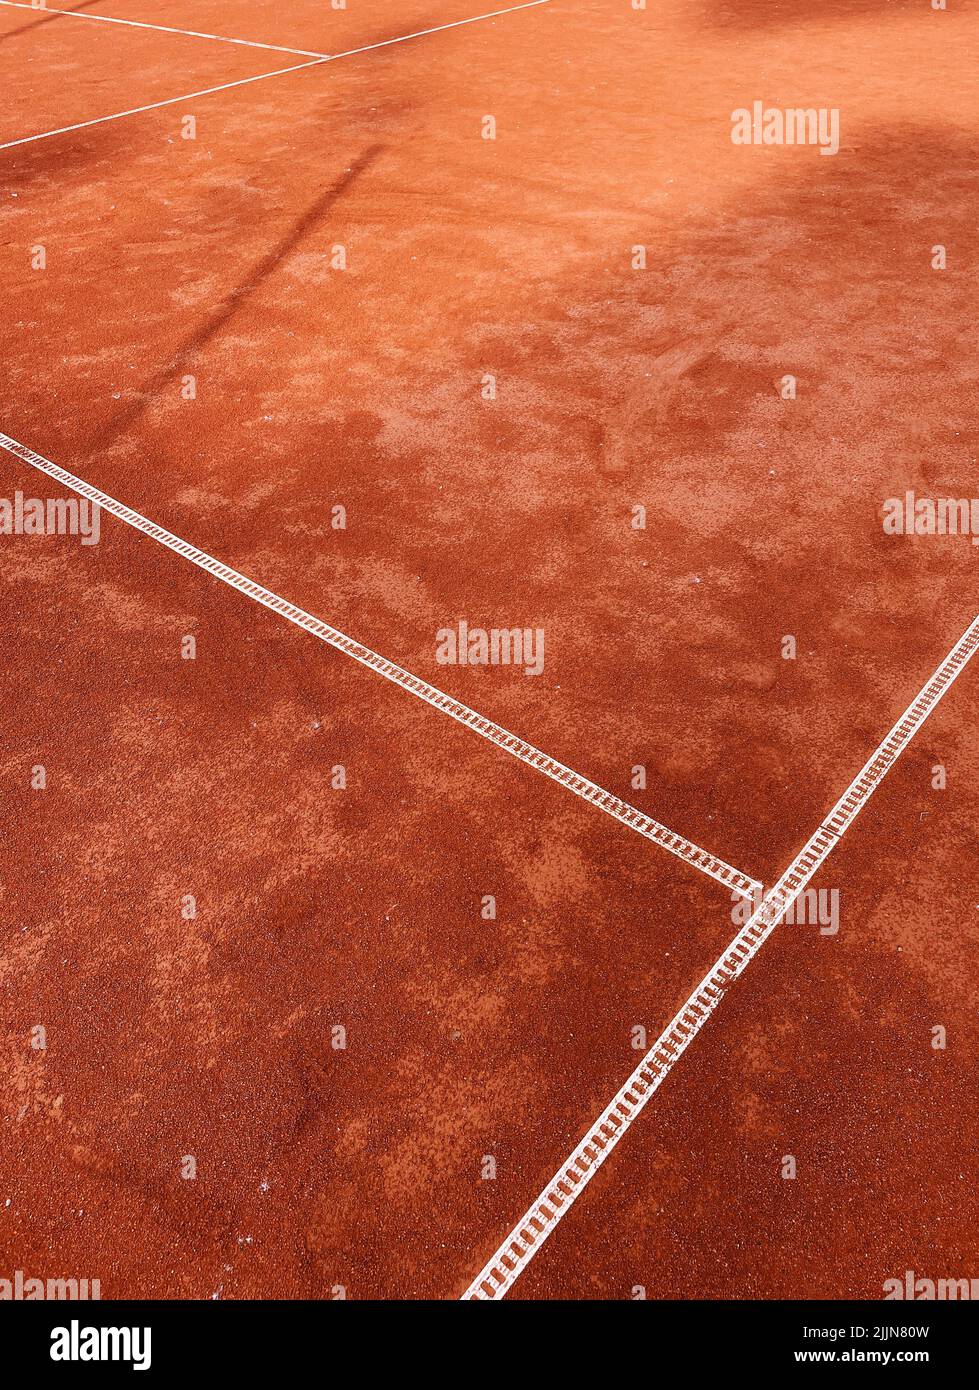 Nahaufnahme eines orangefarbenen Hartplatz-Tennisplatzes Stockfoto